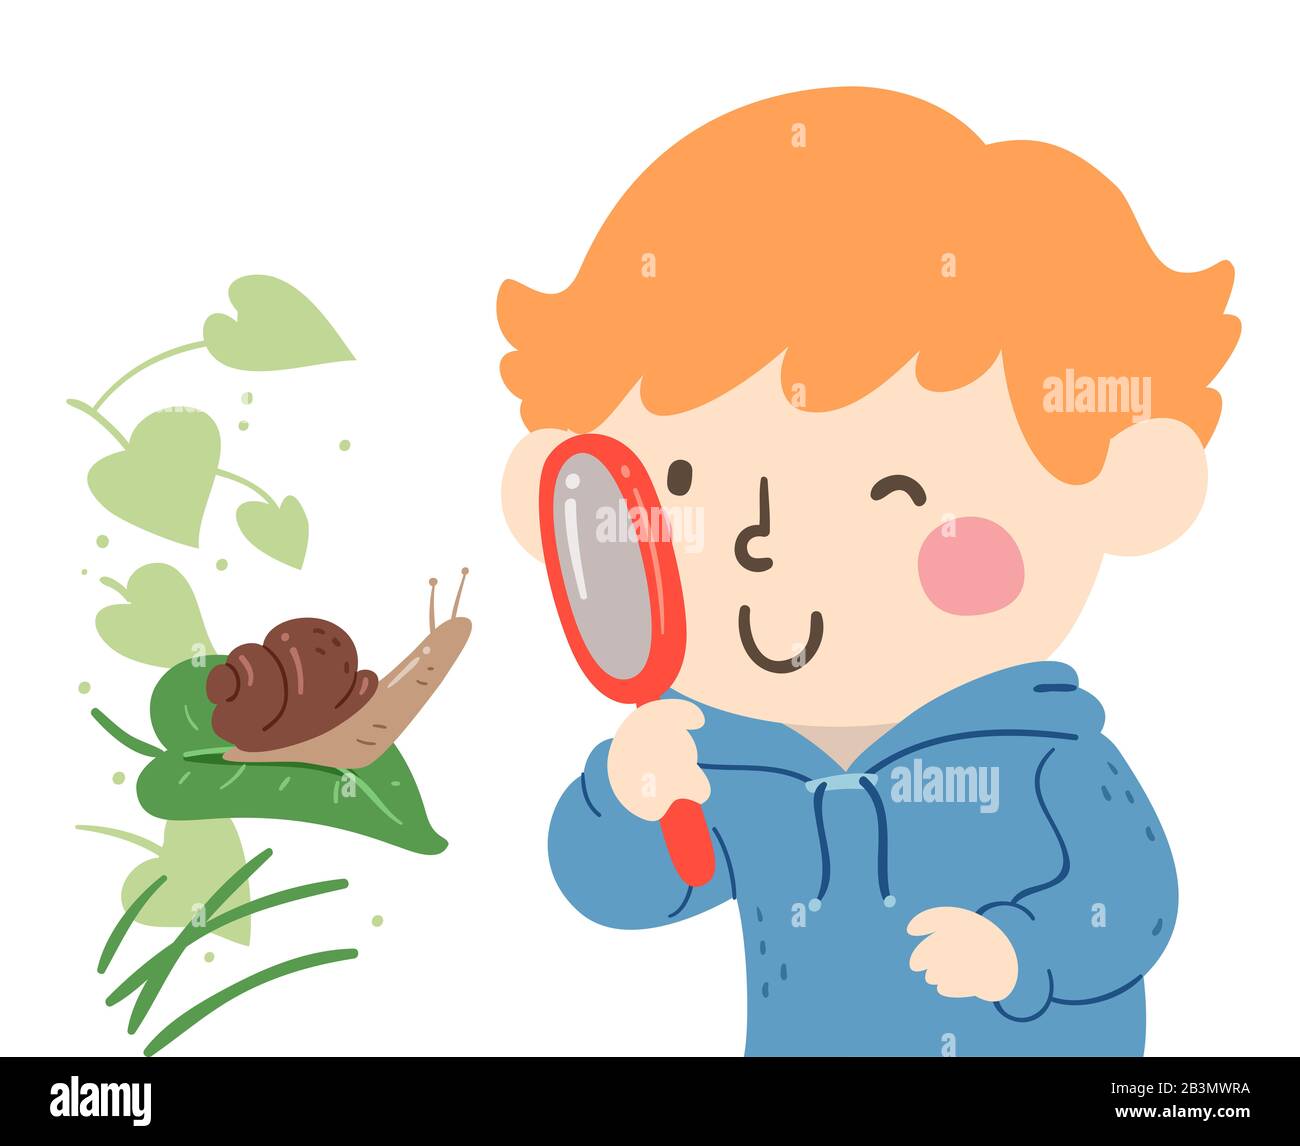 Ilustración de un niño Usando una lupa y viendo una caracol en una hoja  Fotografía de stock - Alamy